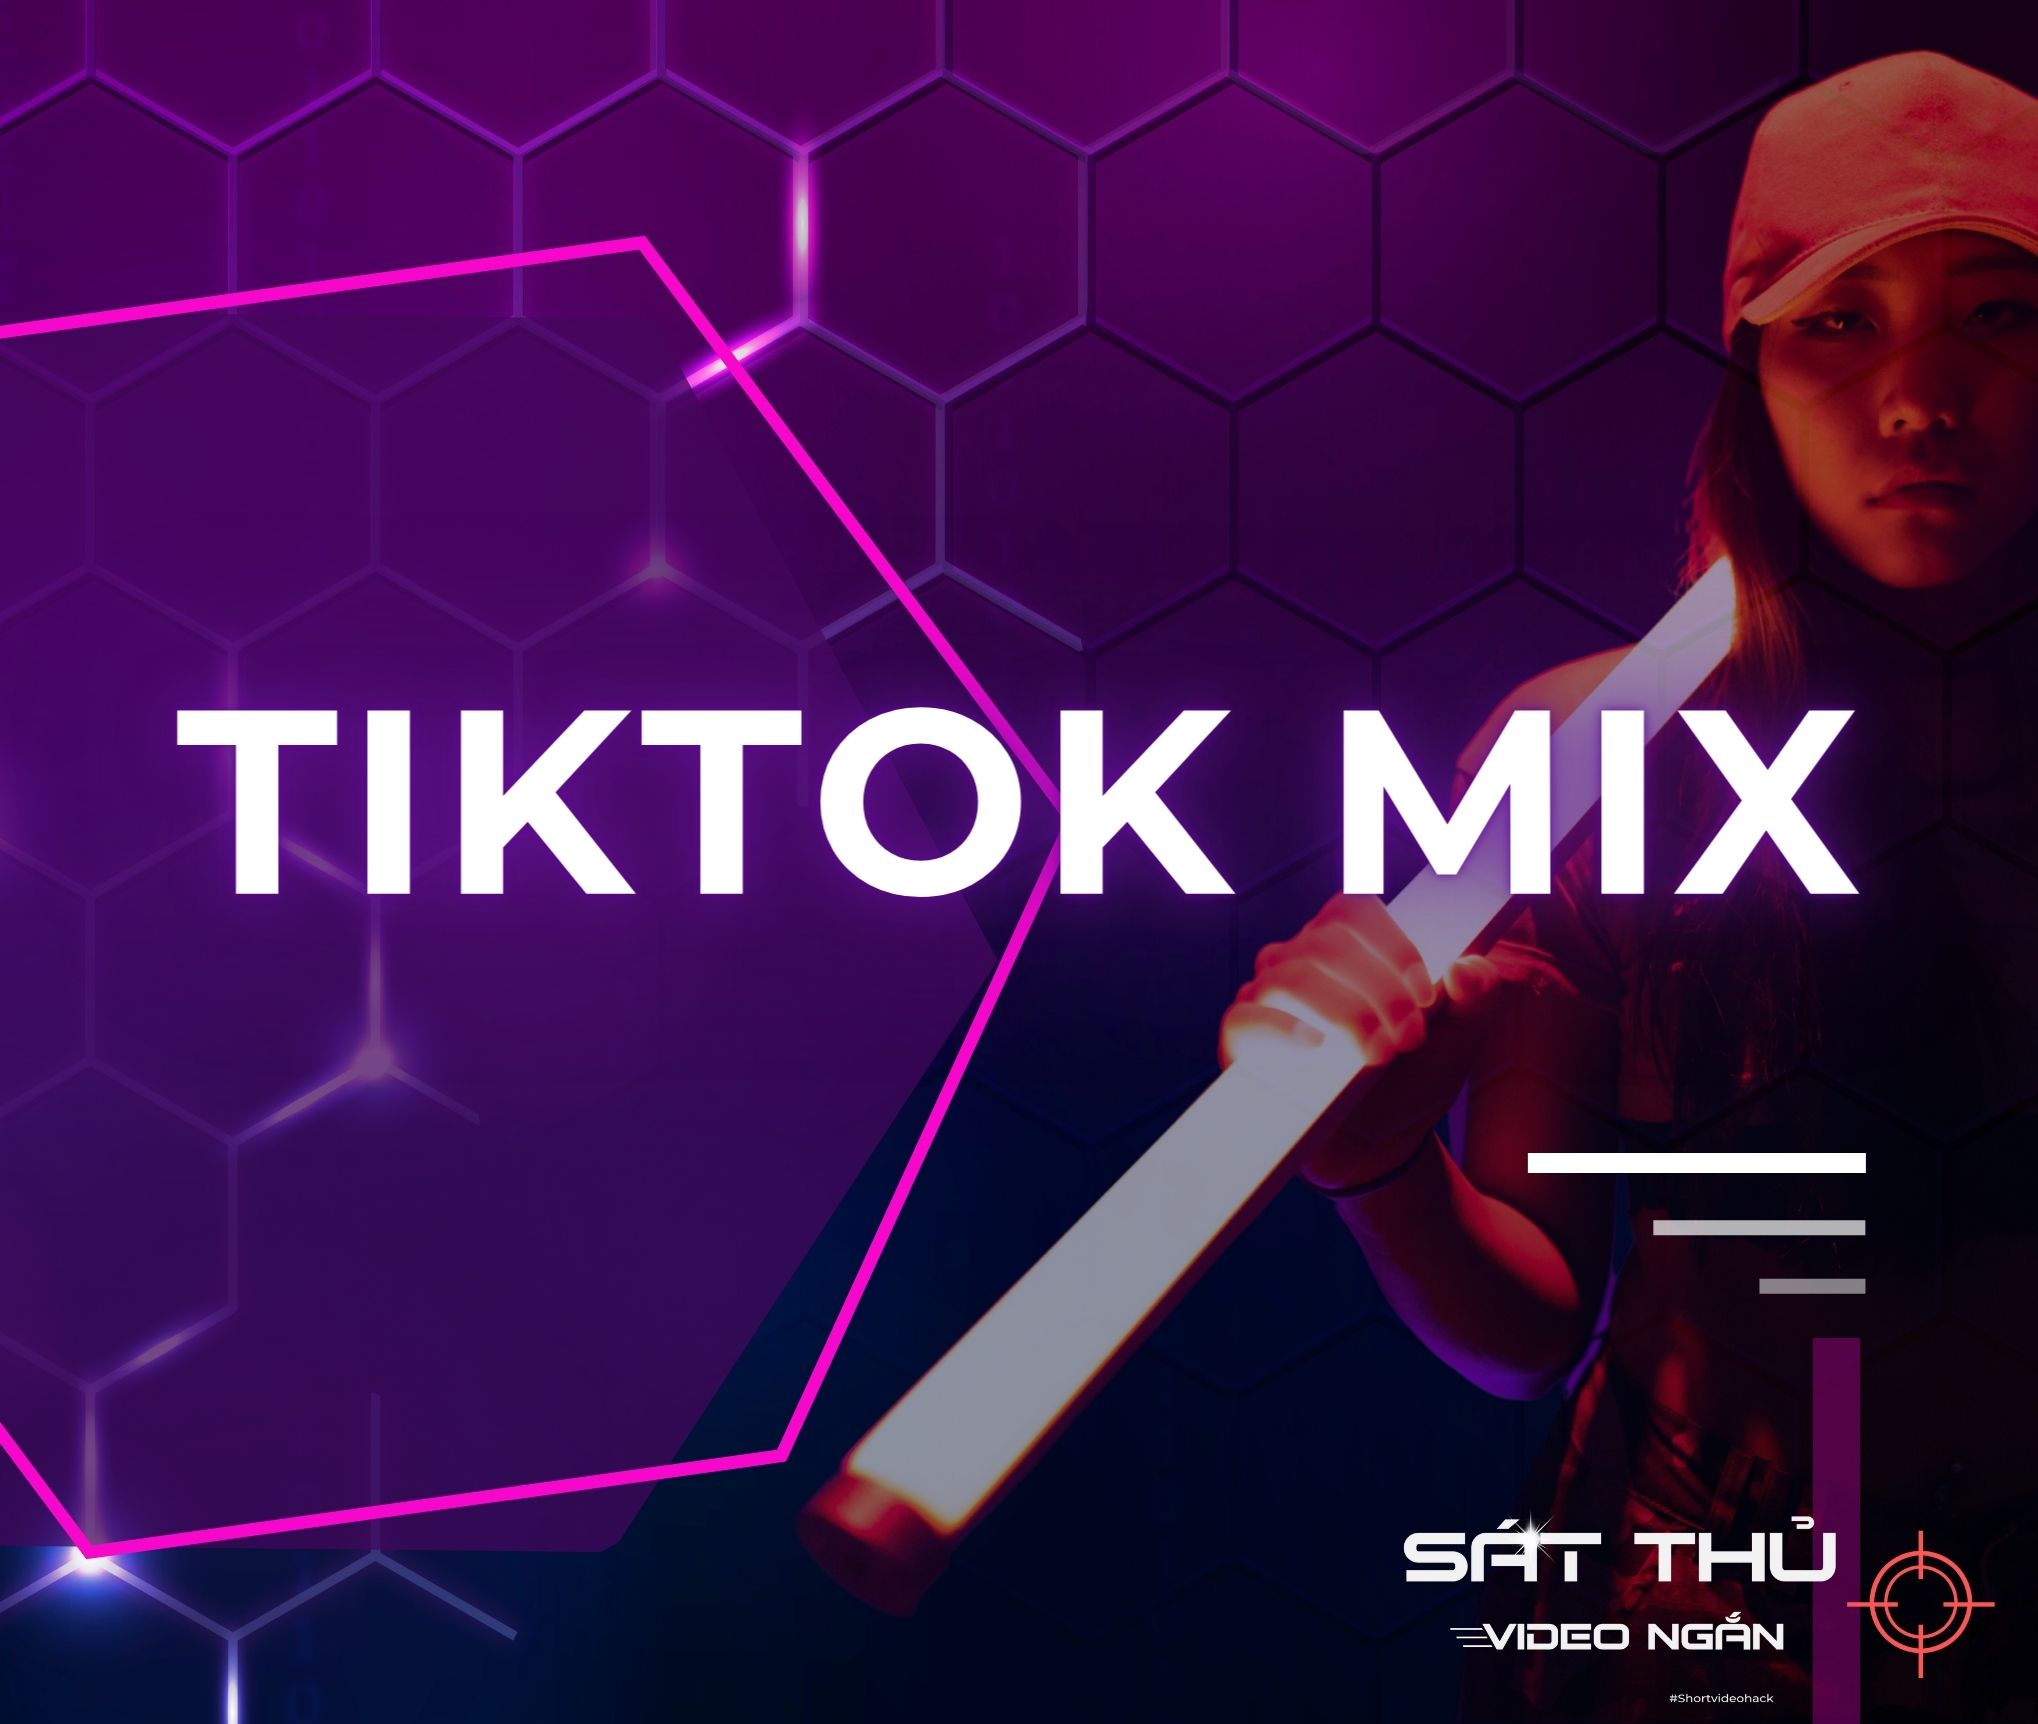 TikTok Mix